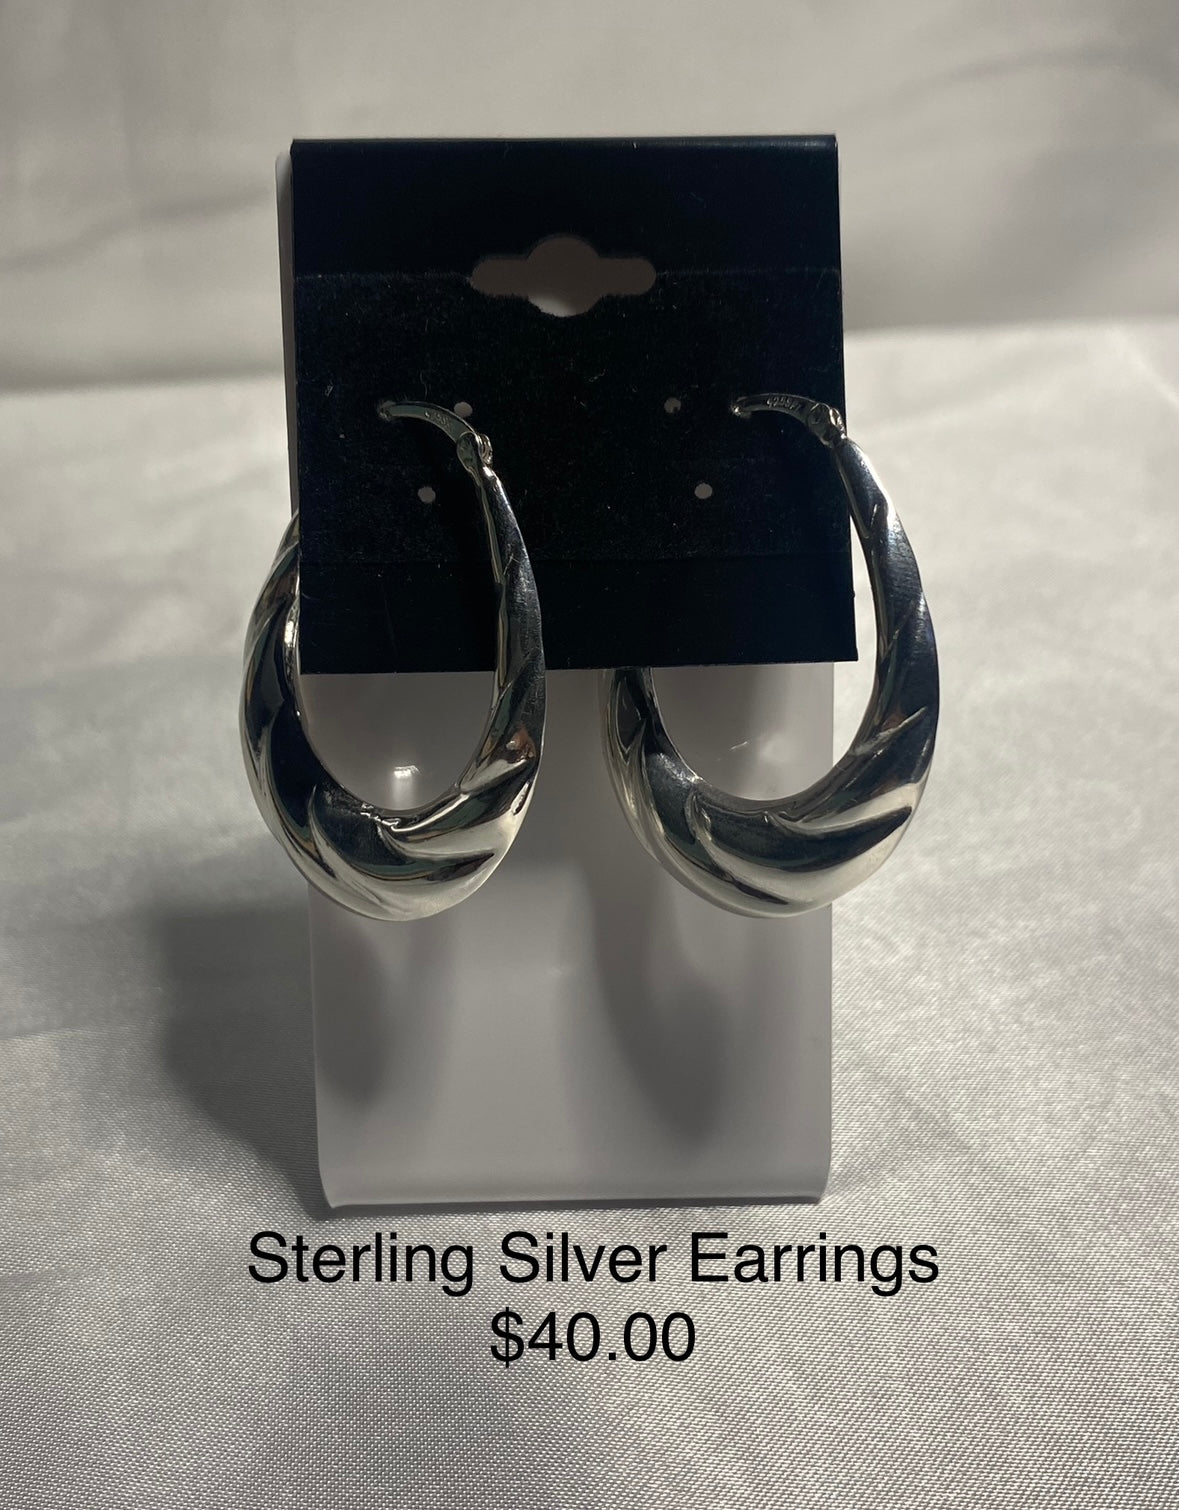 STERLING SILVER EARRINGS